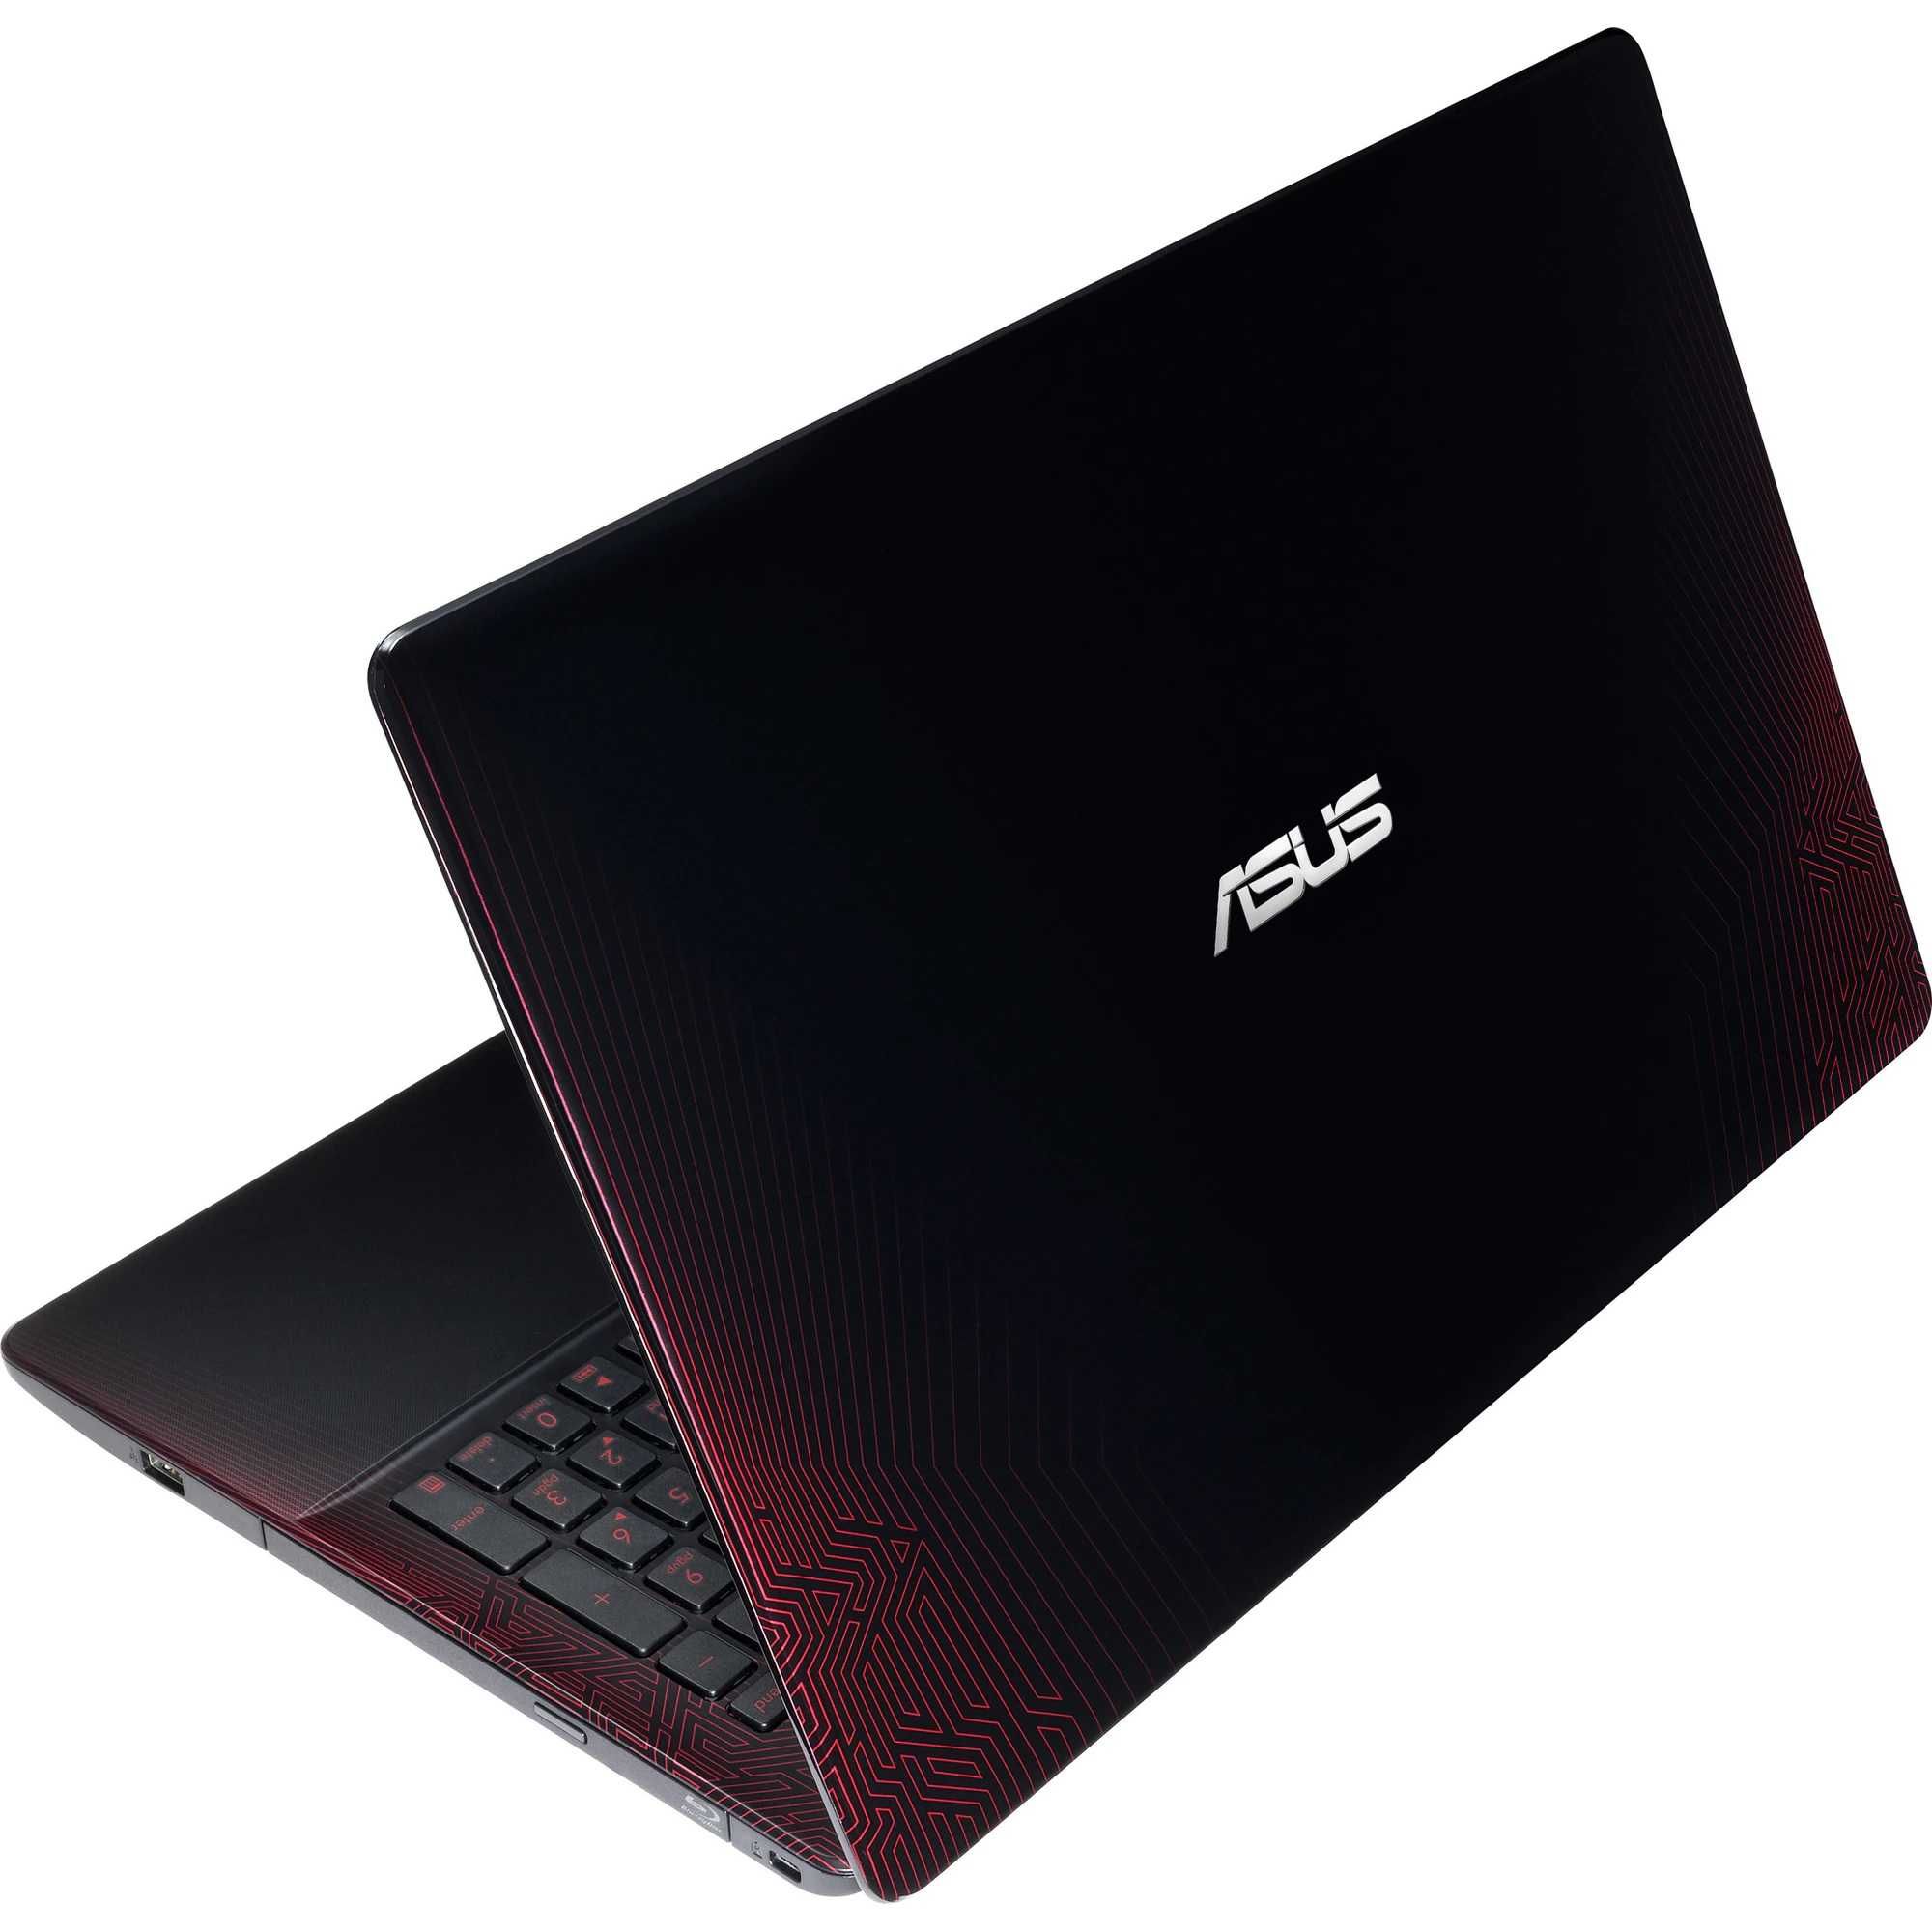 Laptop ASUS Intel® i7-6700HQ, 15.6", Full HD, 8GB, 1TB, GTX 950M 4GB